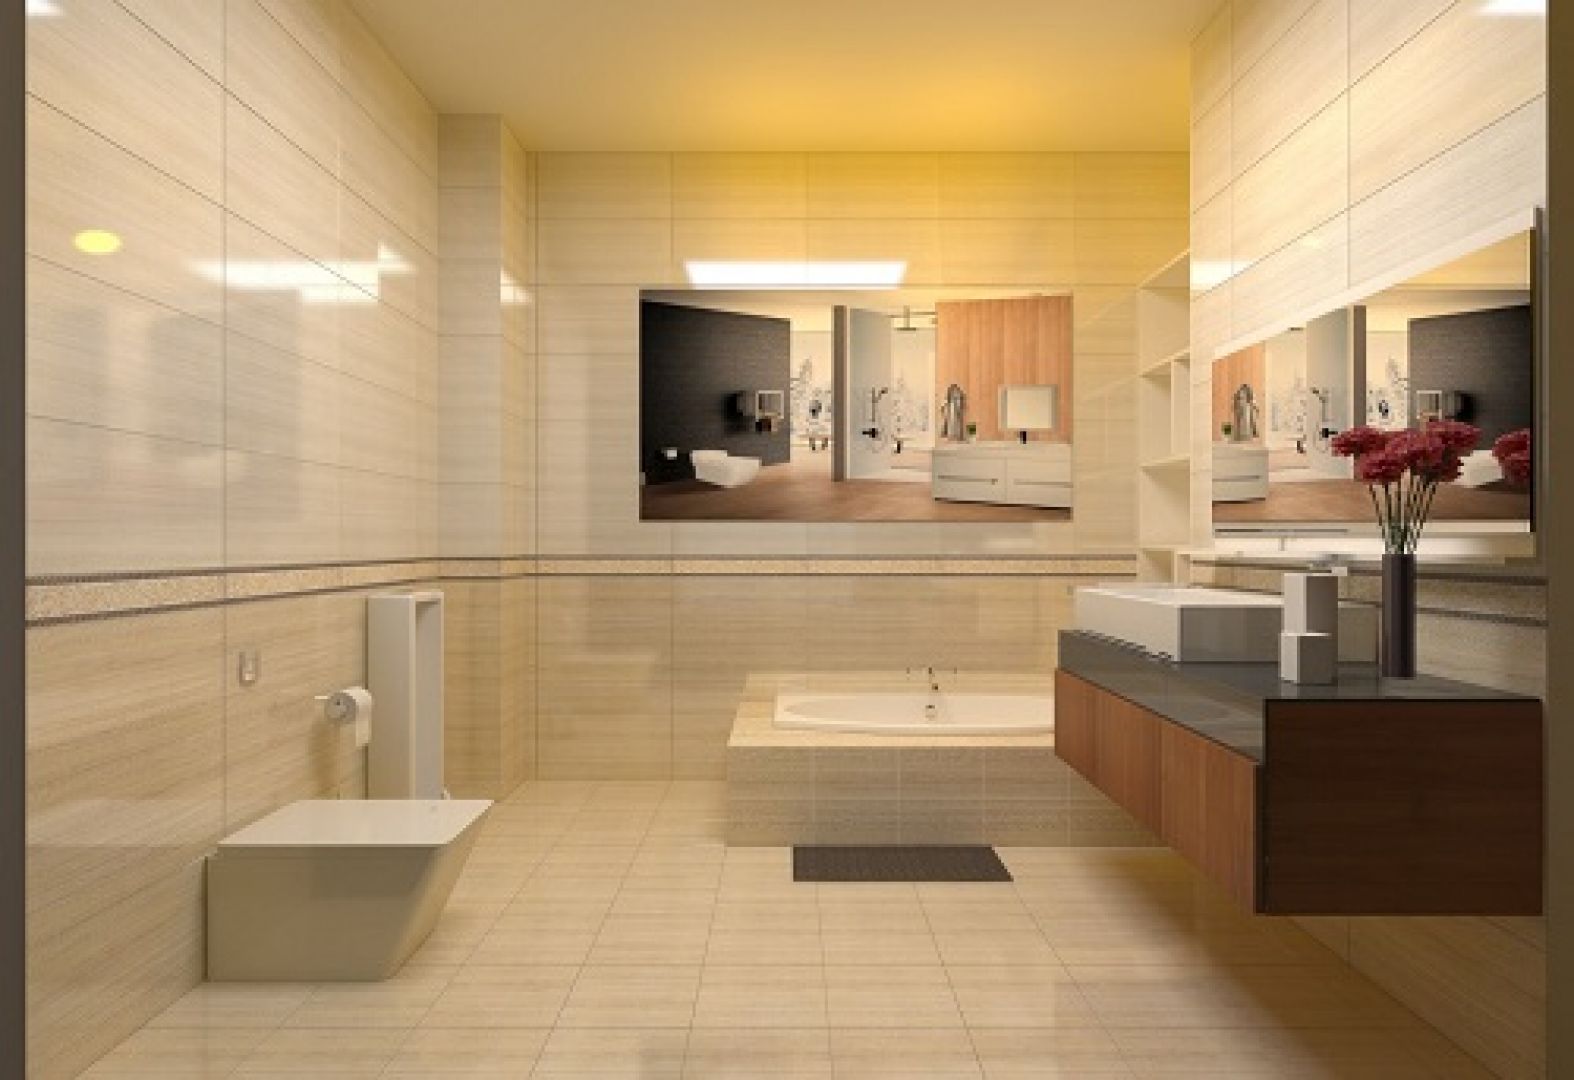 Gạch lát nền nhà tắm Đồng Tâm với đa dạng màu sắc và kích cỡ giúp bạn dễ dàng lựa chọn cho phù hợp với sở thích và không gian của mình. Bạn có thể thoải mái tạo ra các mẫu lát gạch tạo nên cái nhìn mới lạ cho phòng tắm của bạn.